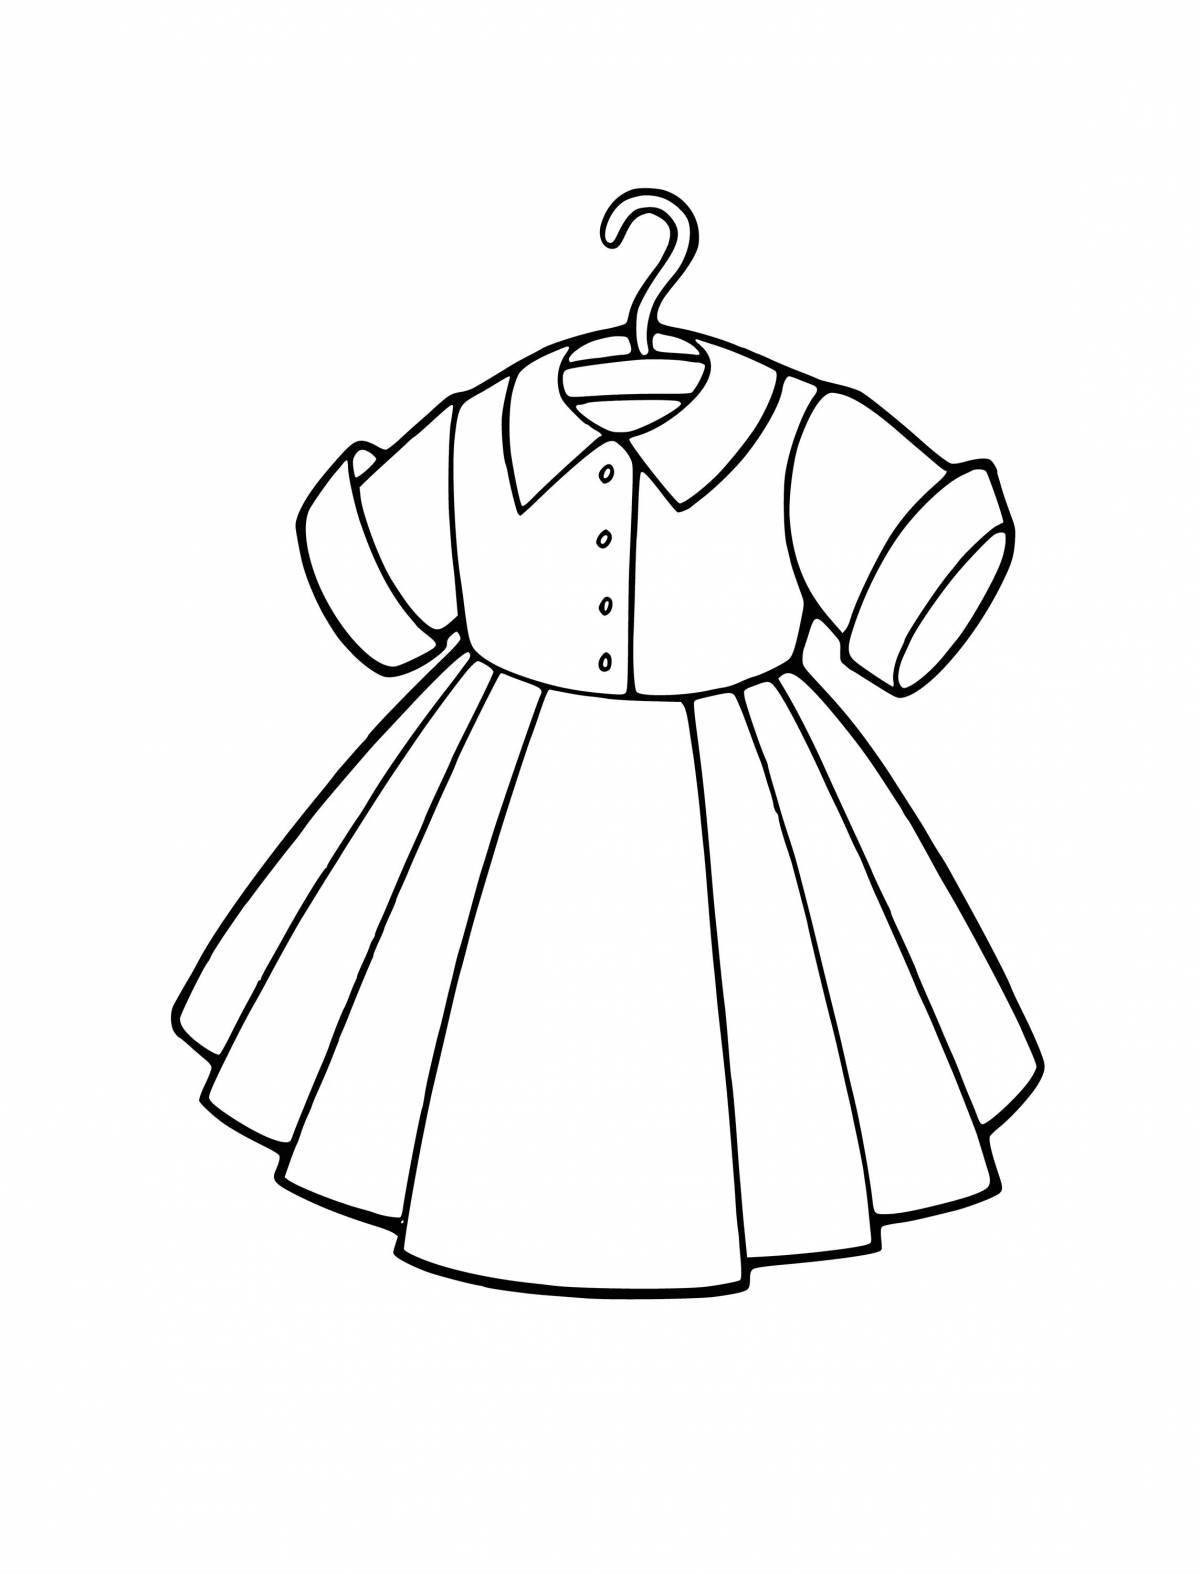 Раскраска милое кукольное платье для детей 3-4 лет